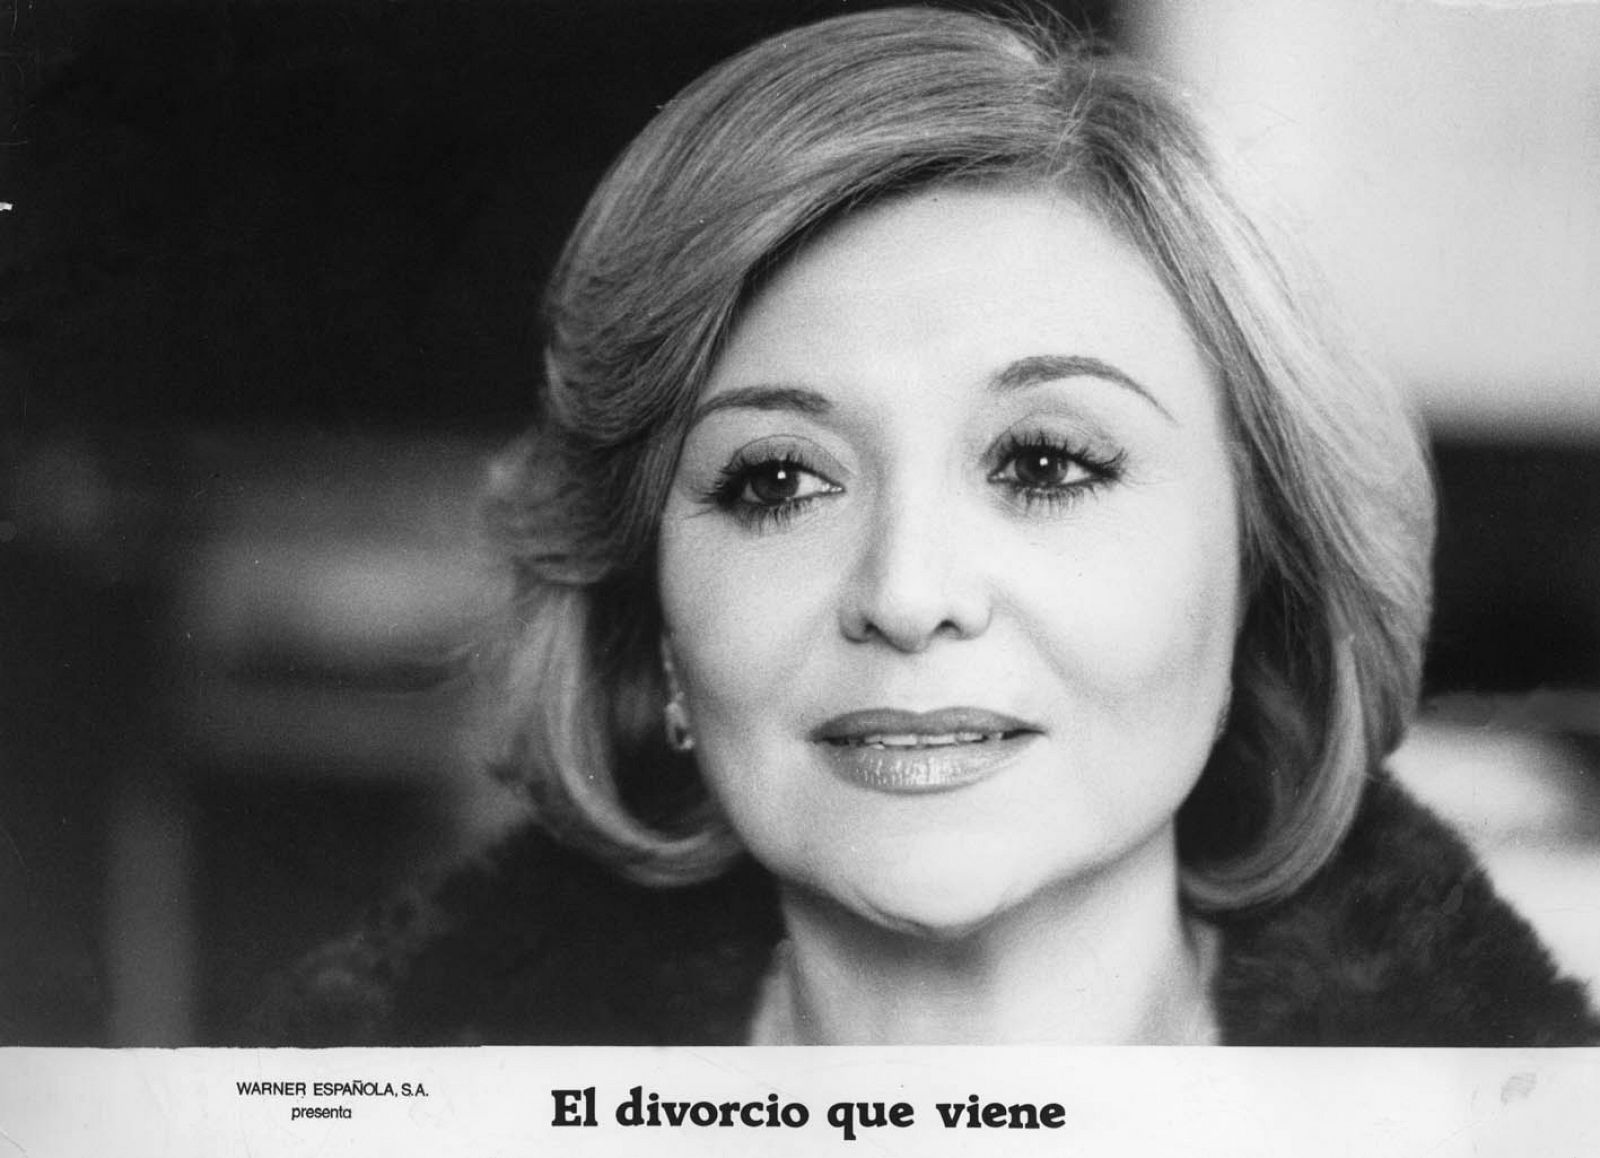 La actriz Amparo Soler Leal en una escena de la película 'El divorcio que viene' (1980).